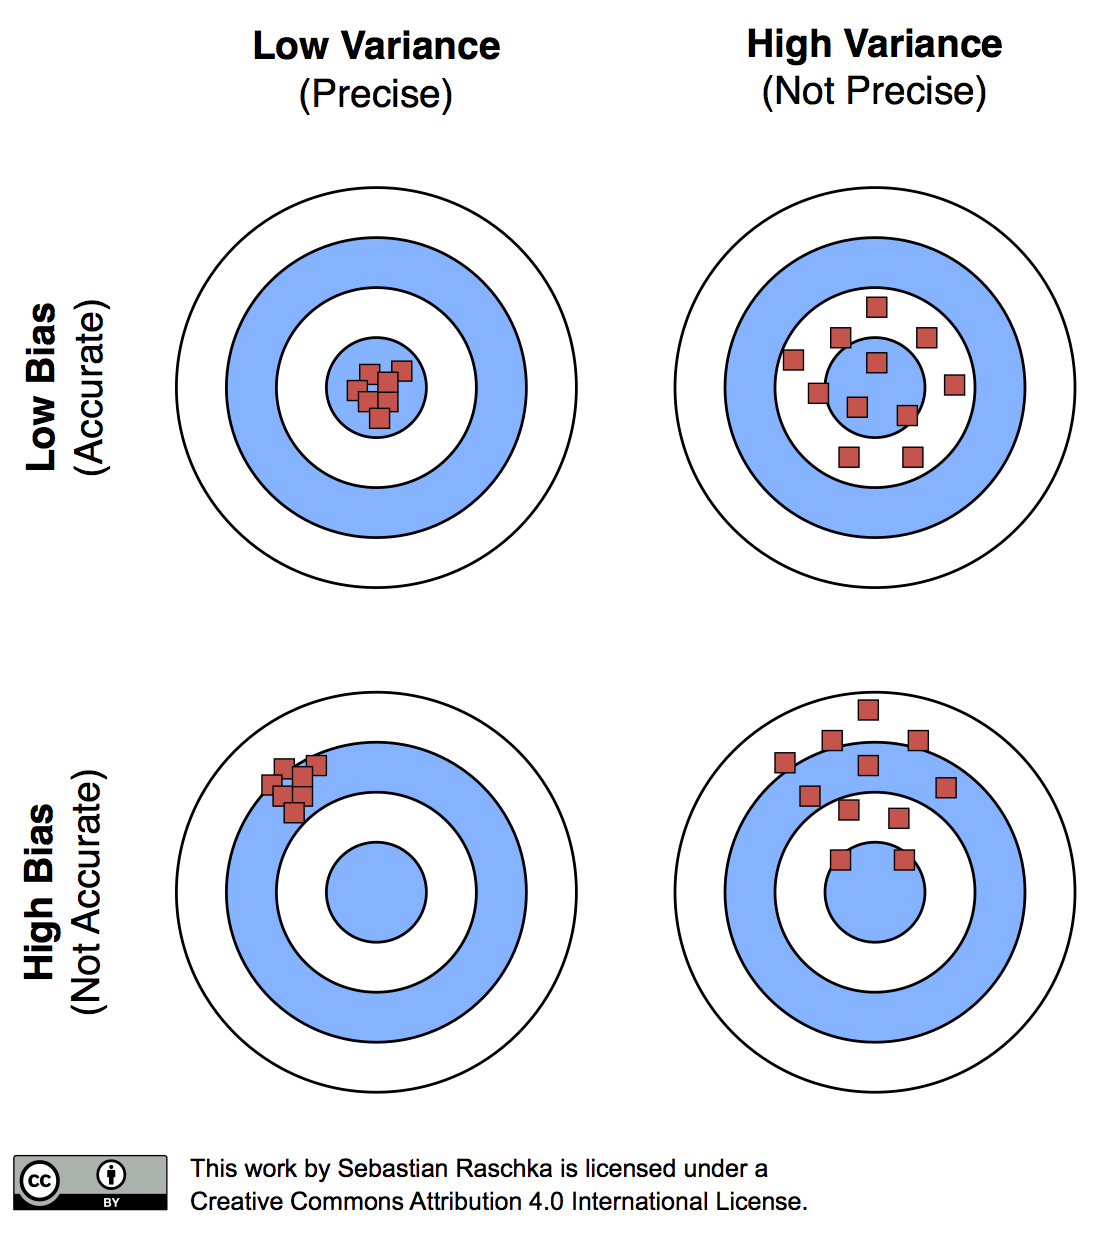 https://sebastianraschka.com/images/blog/2016/model-evaluation-selection-part2/visual_bias_variance.png